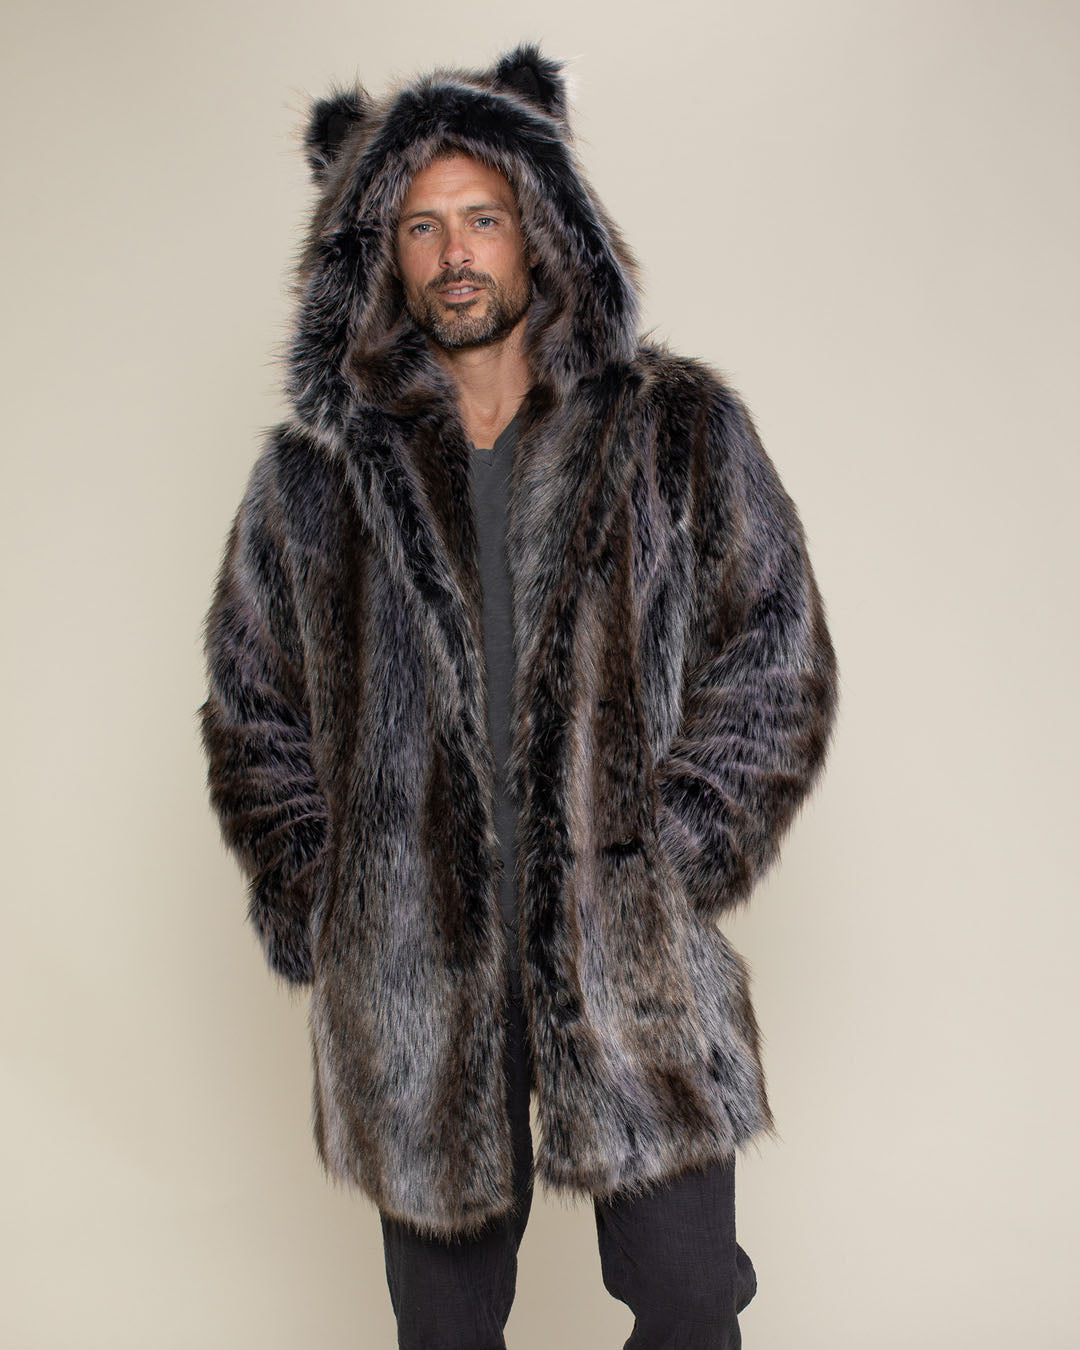 Men's Fur Coats, Fur Jackets for Men